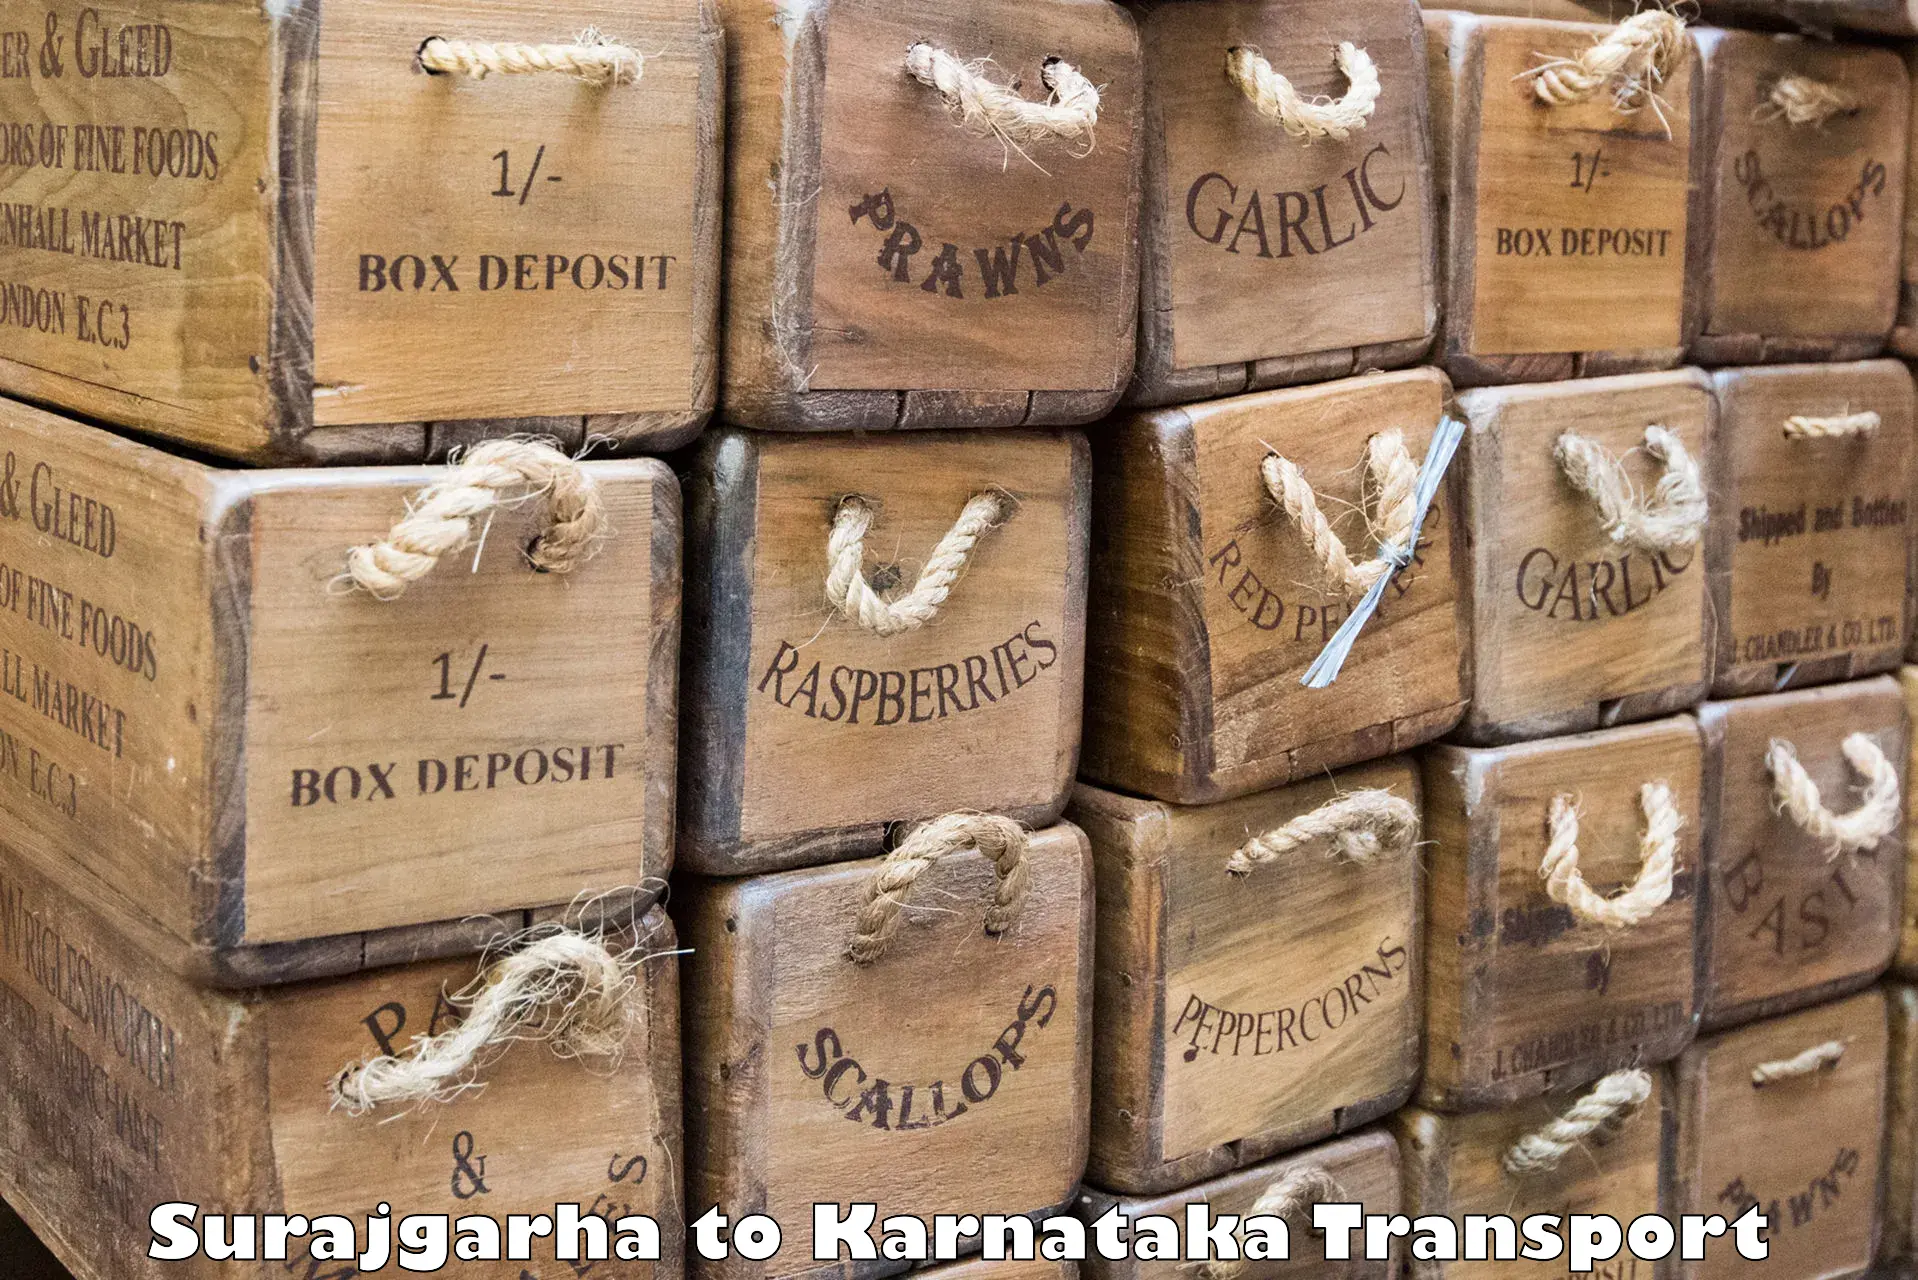 Part load transport service in India Surajgarha to Kanjarakatte